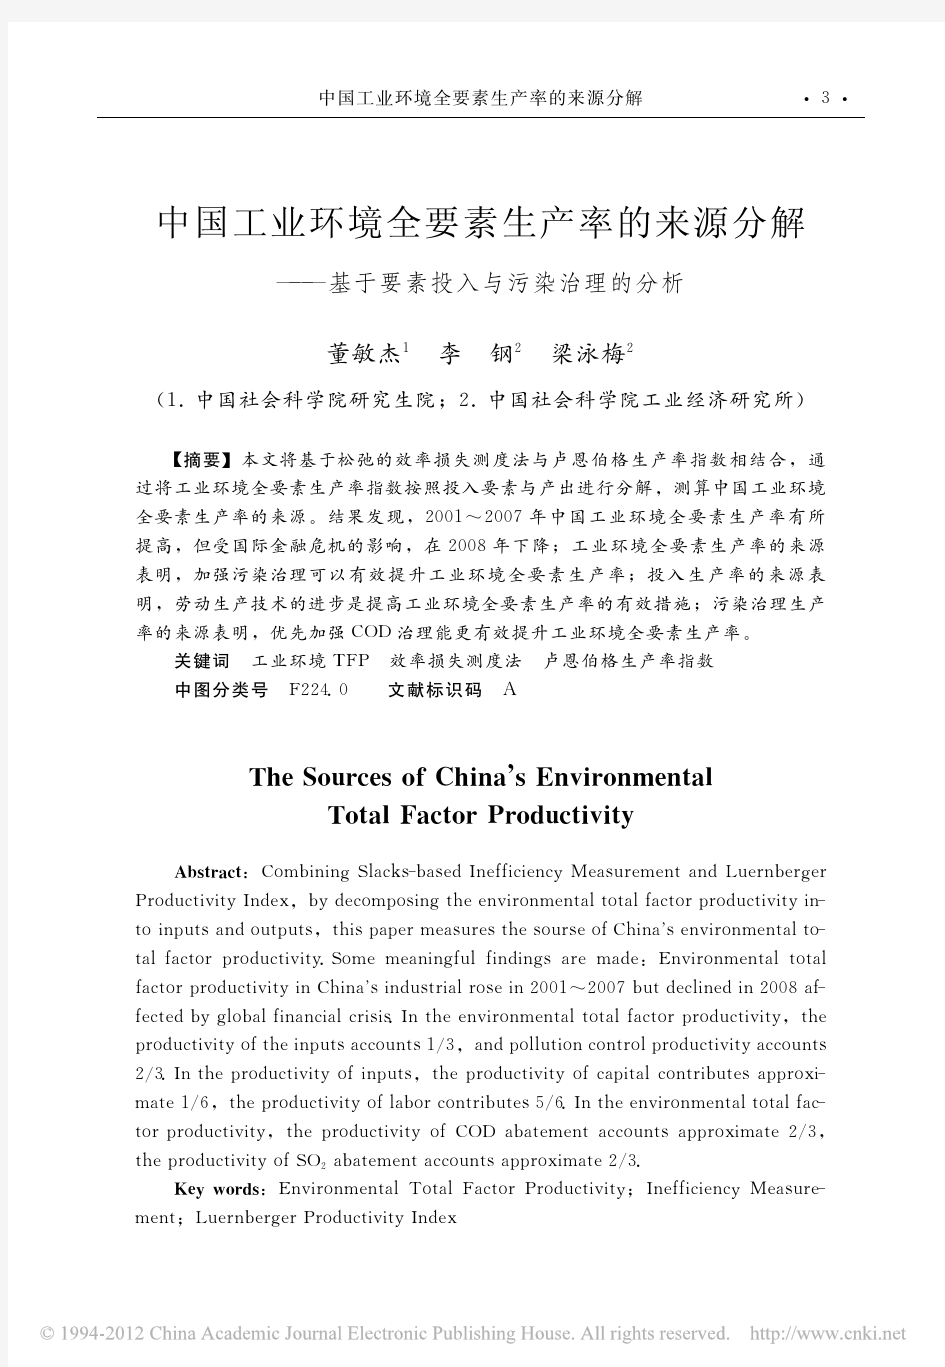 中国工业环境全要素生产率的来源分解_基于要素投入与污染治理的分析